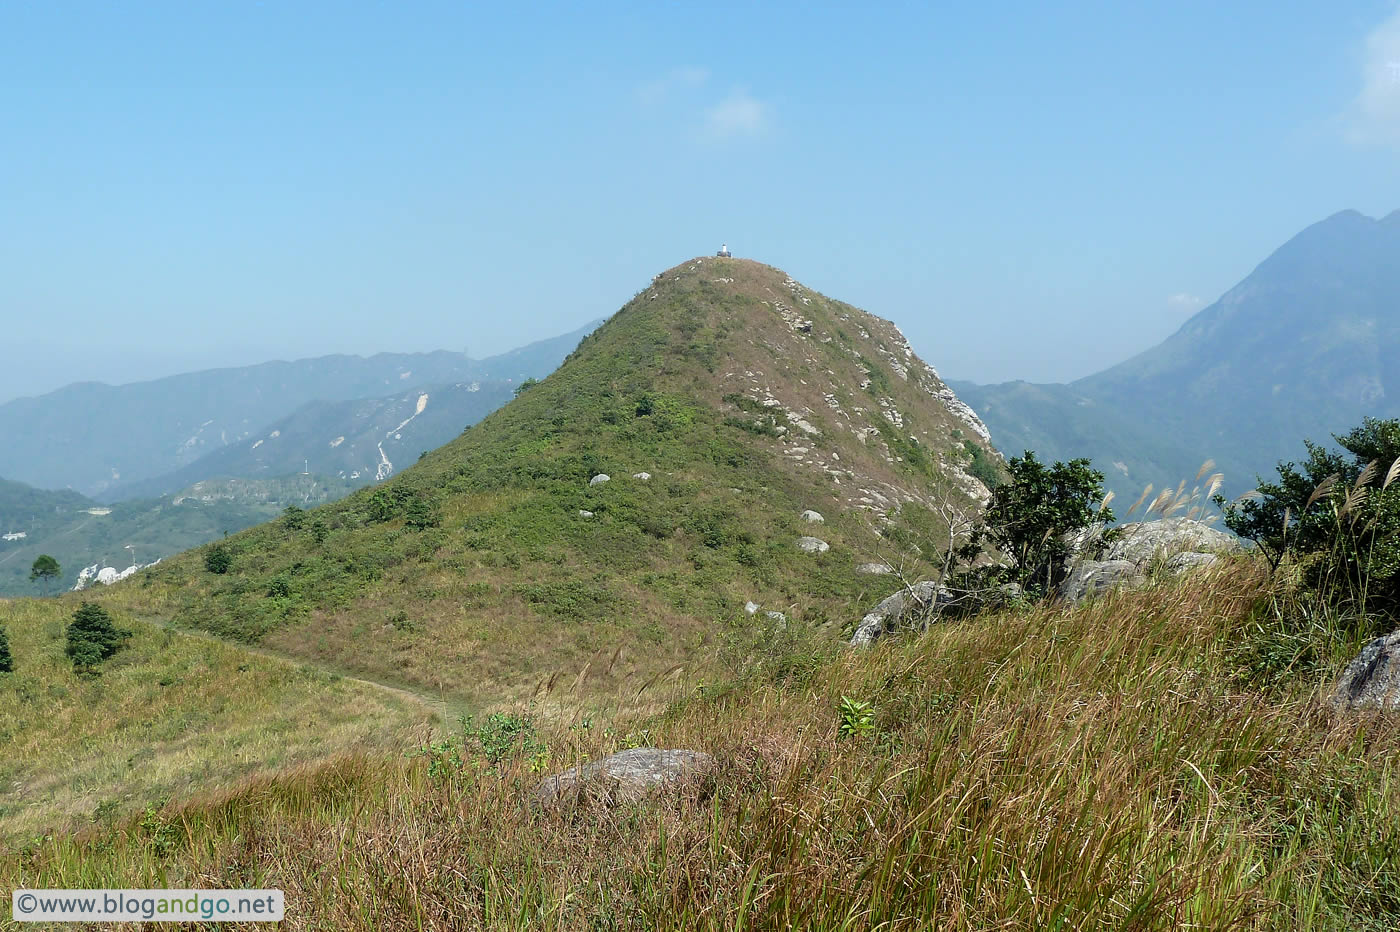 Lantau Trail - Stage 5 on the peaks